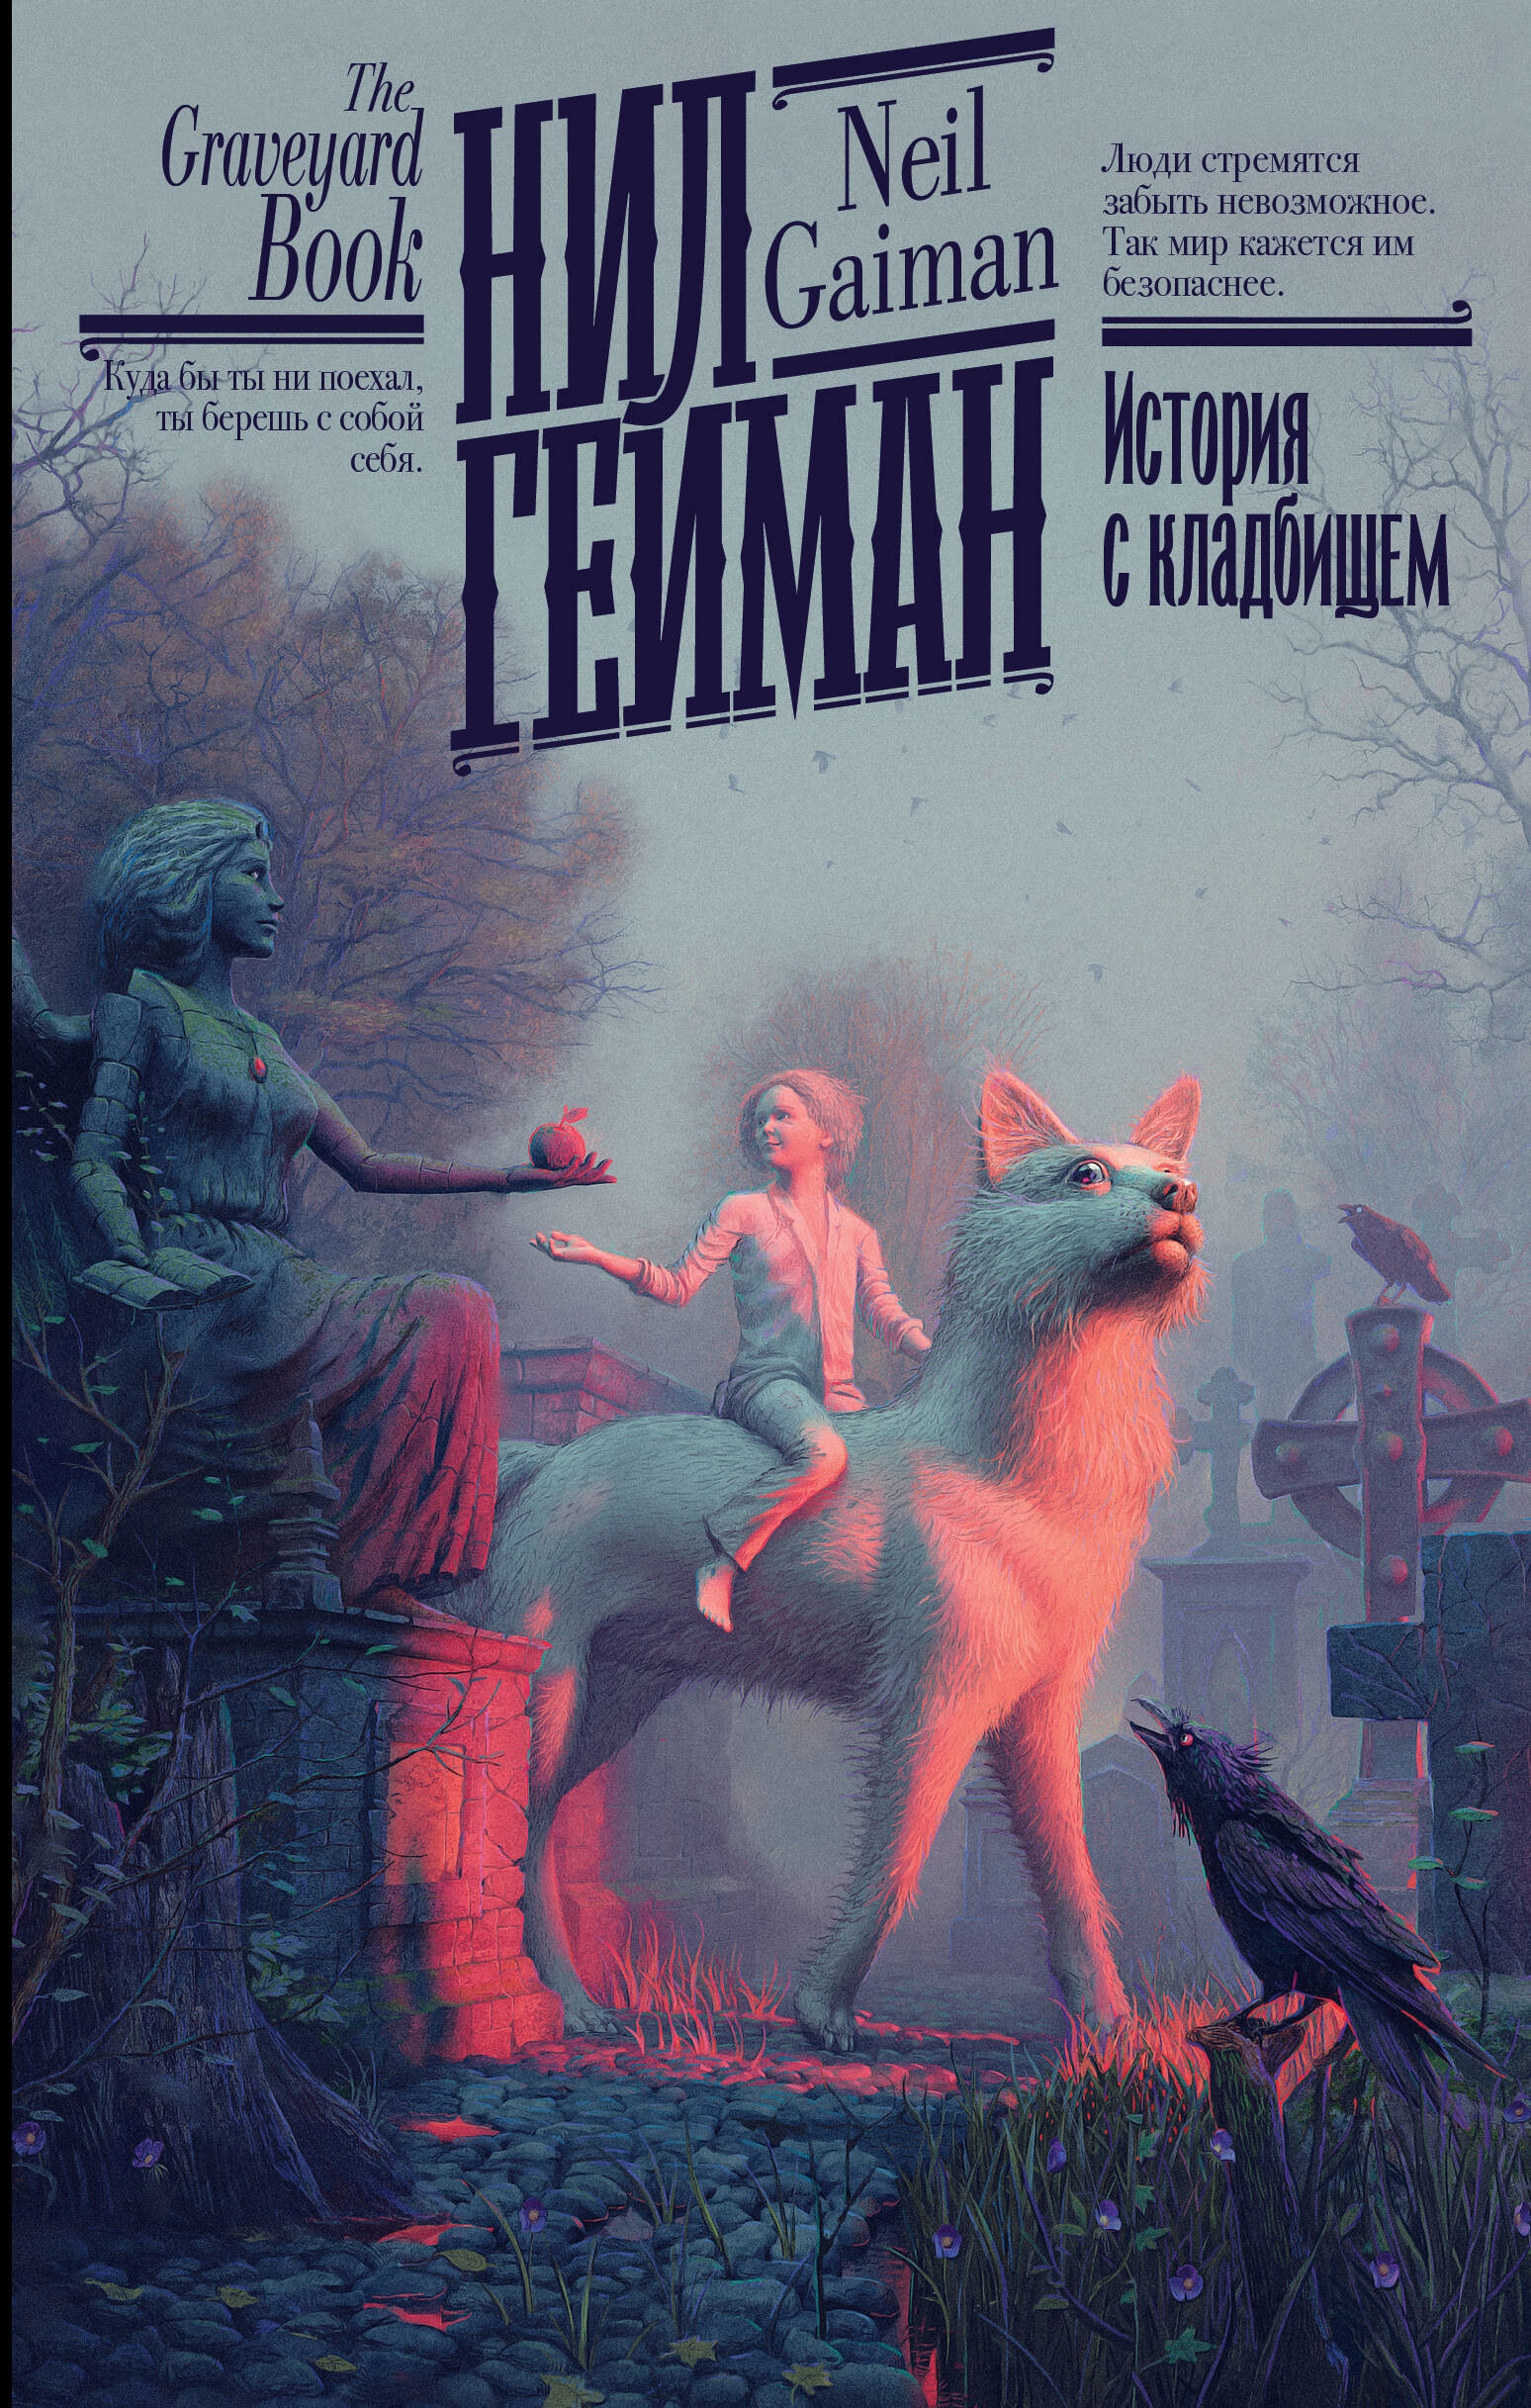 Book “История с кладбищем” by Нил Гейман — 2023